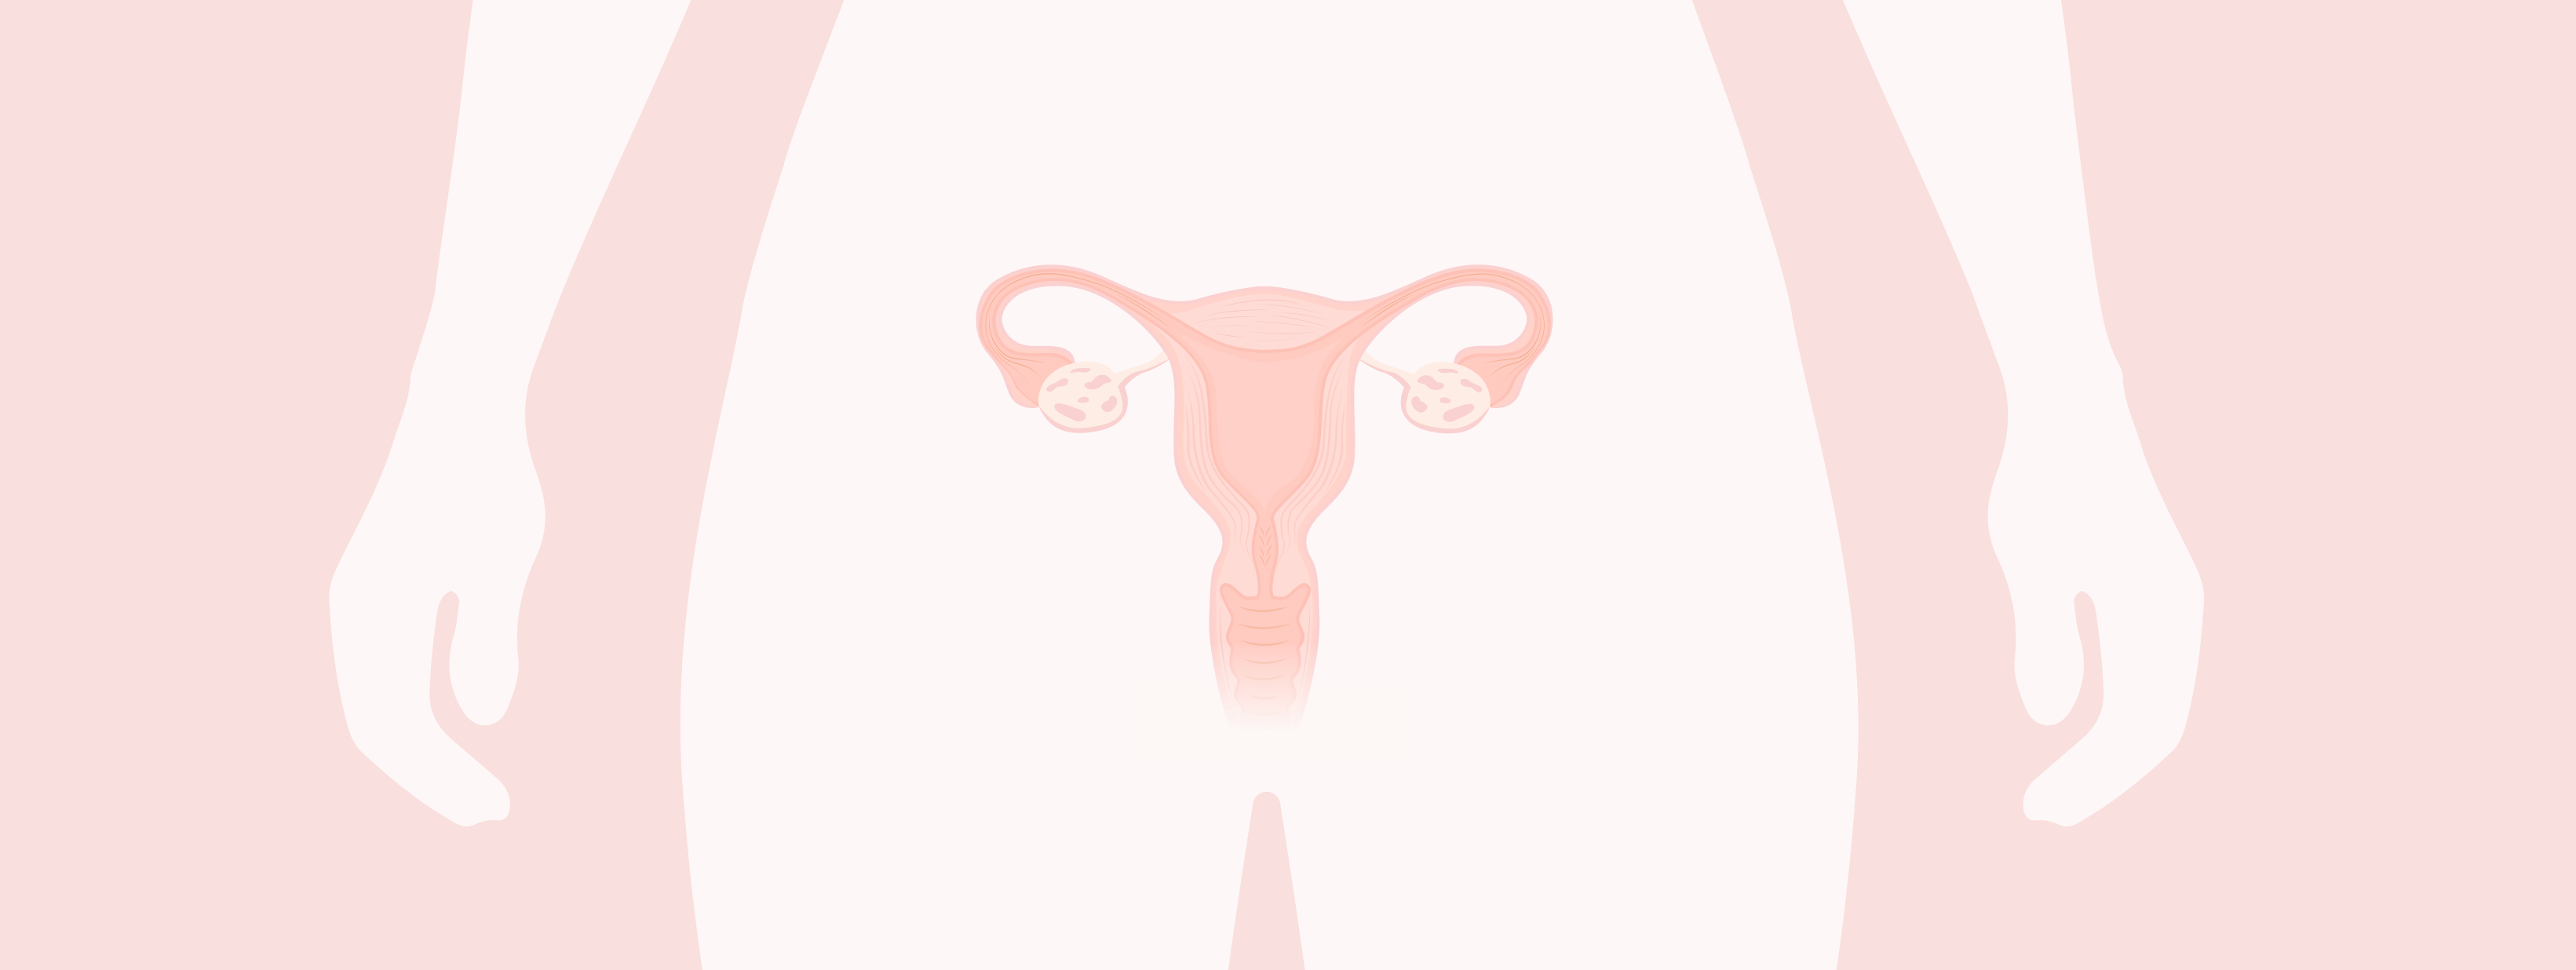 Illustrazione dell'utero